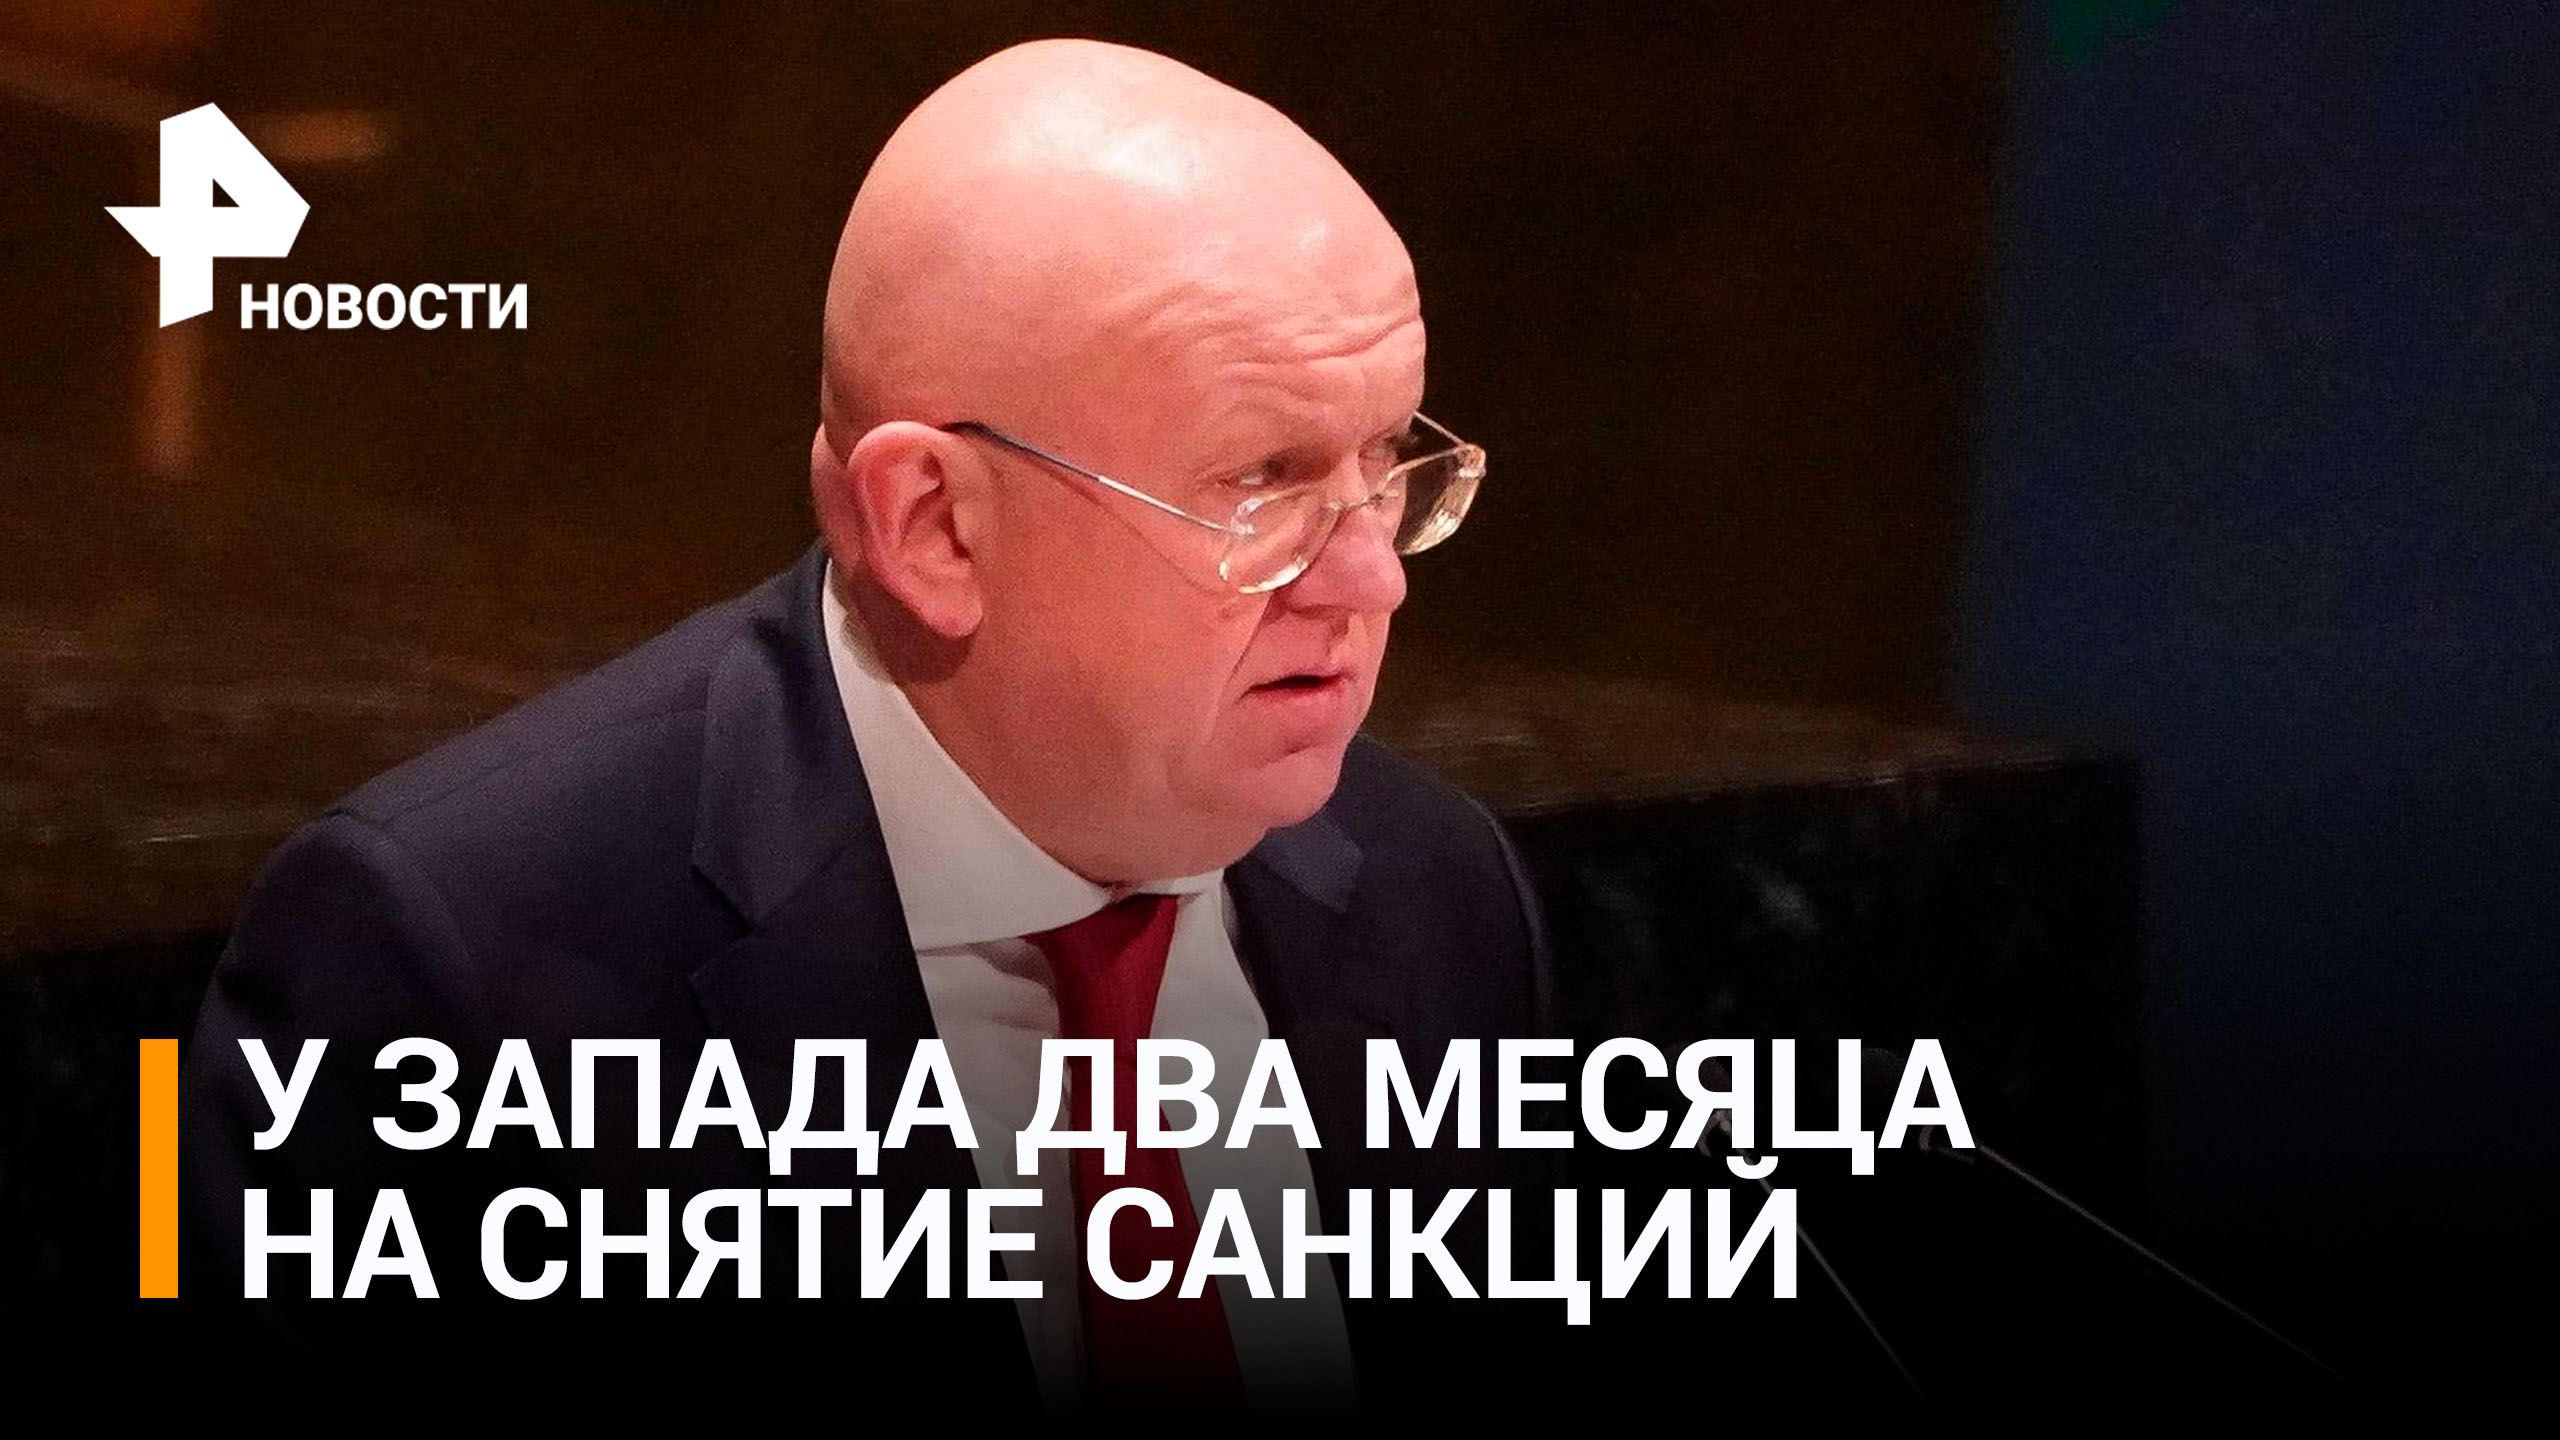 Небензя: у Запада есть два месяца на снятие санкций / РЕН Новости